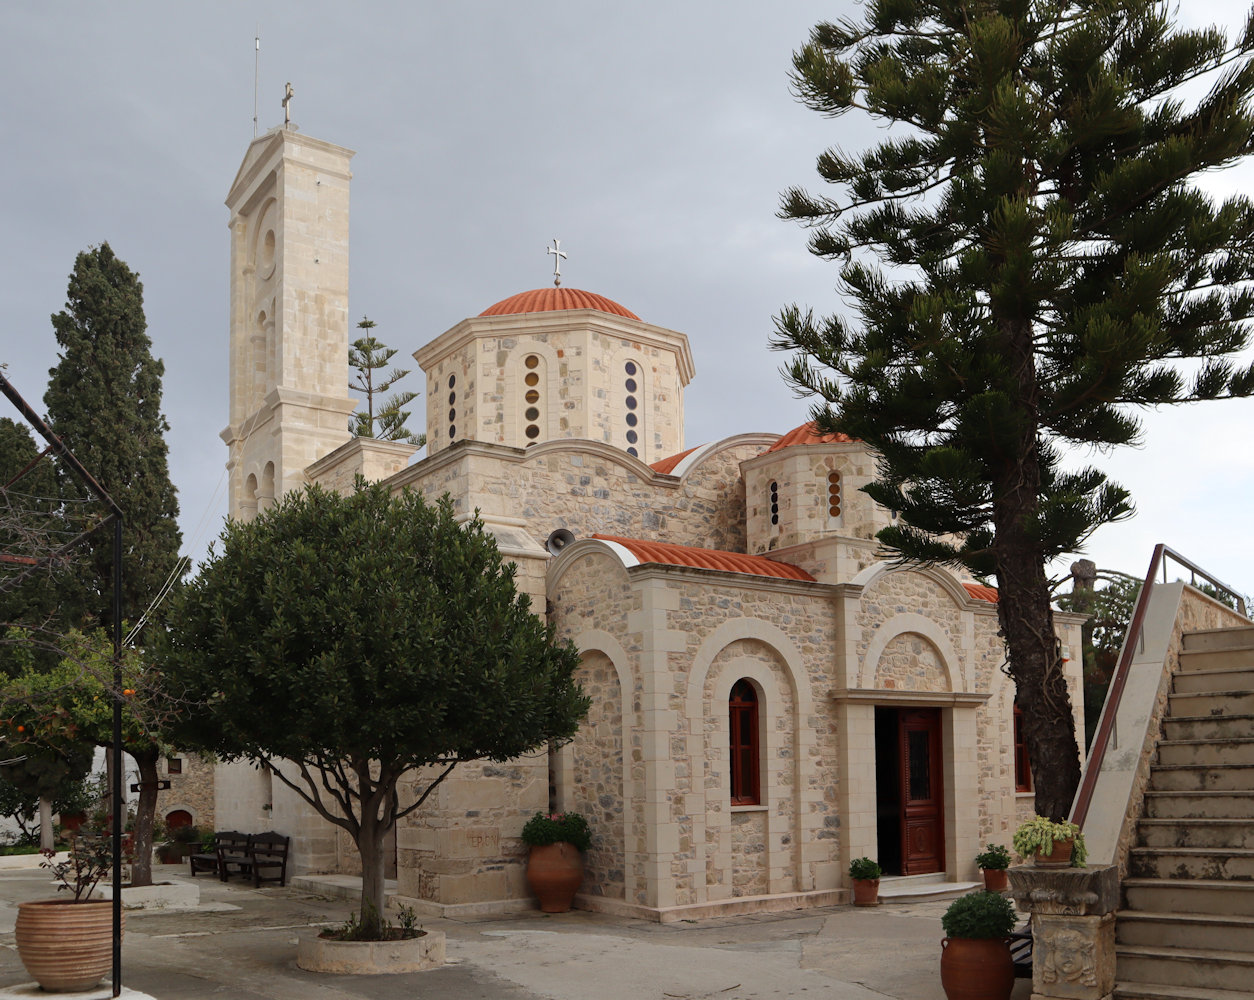 Katholikon des Klosters Angarathos. Unter dem Granatapfelbaum links wurde der Überlieferung zufolge im 10. Jahrhundert eine Marienikone gefunden und deshalb das Kloster errichtet.